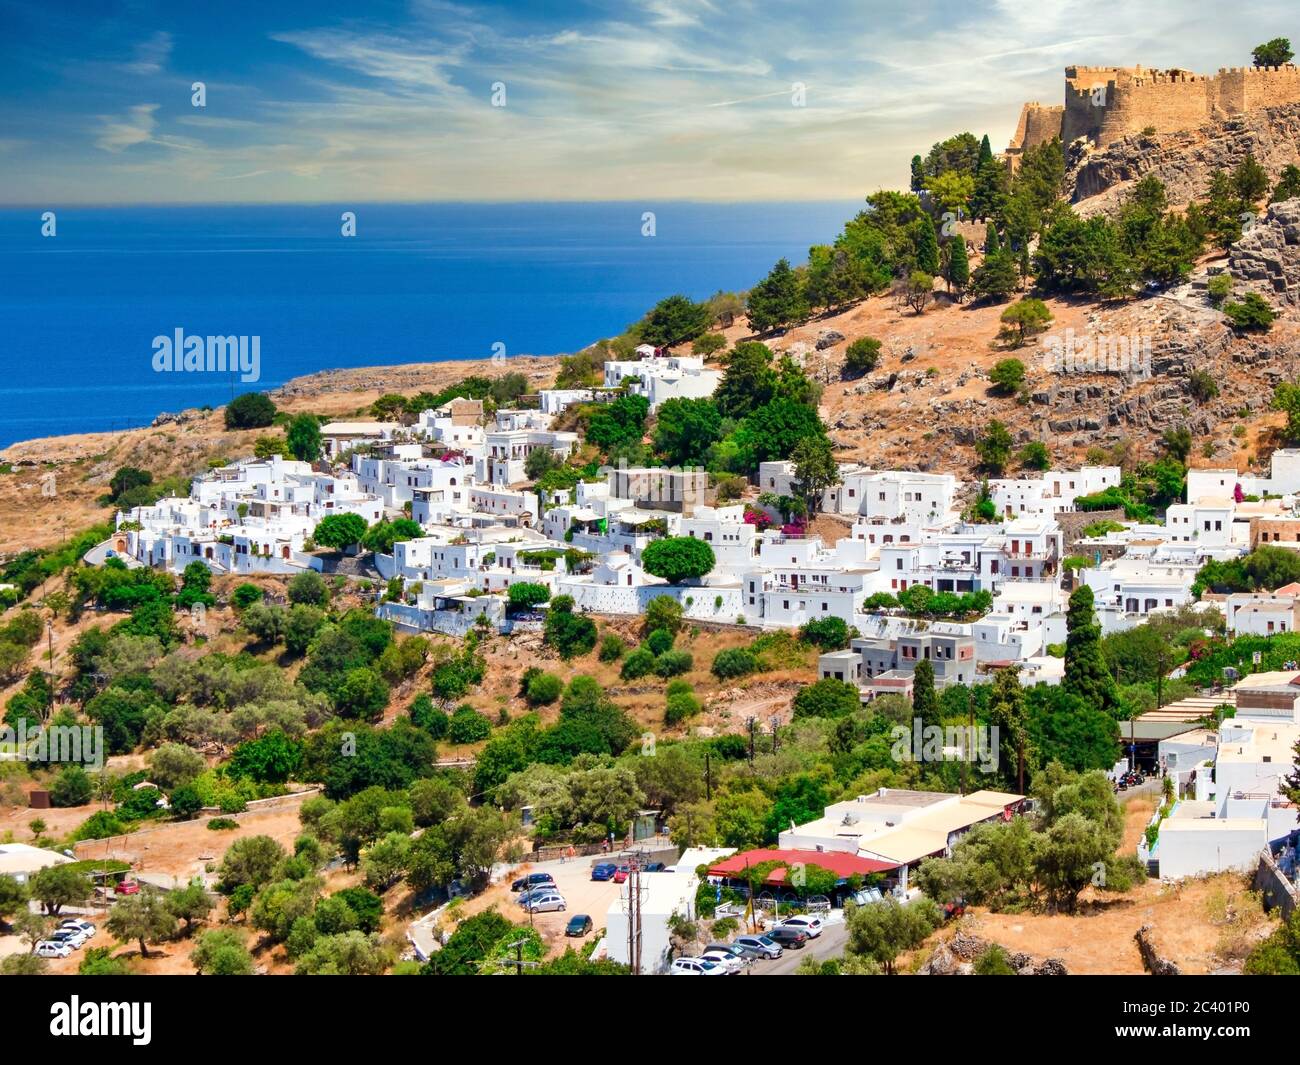 Das berühmte und historische mittelalterliche Dorf Lindos auf der griechischen Insel Rhodos mit der Akropolis im Hintergrund Stockfoto